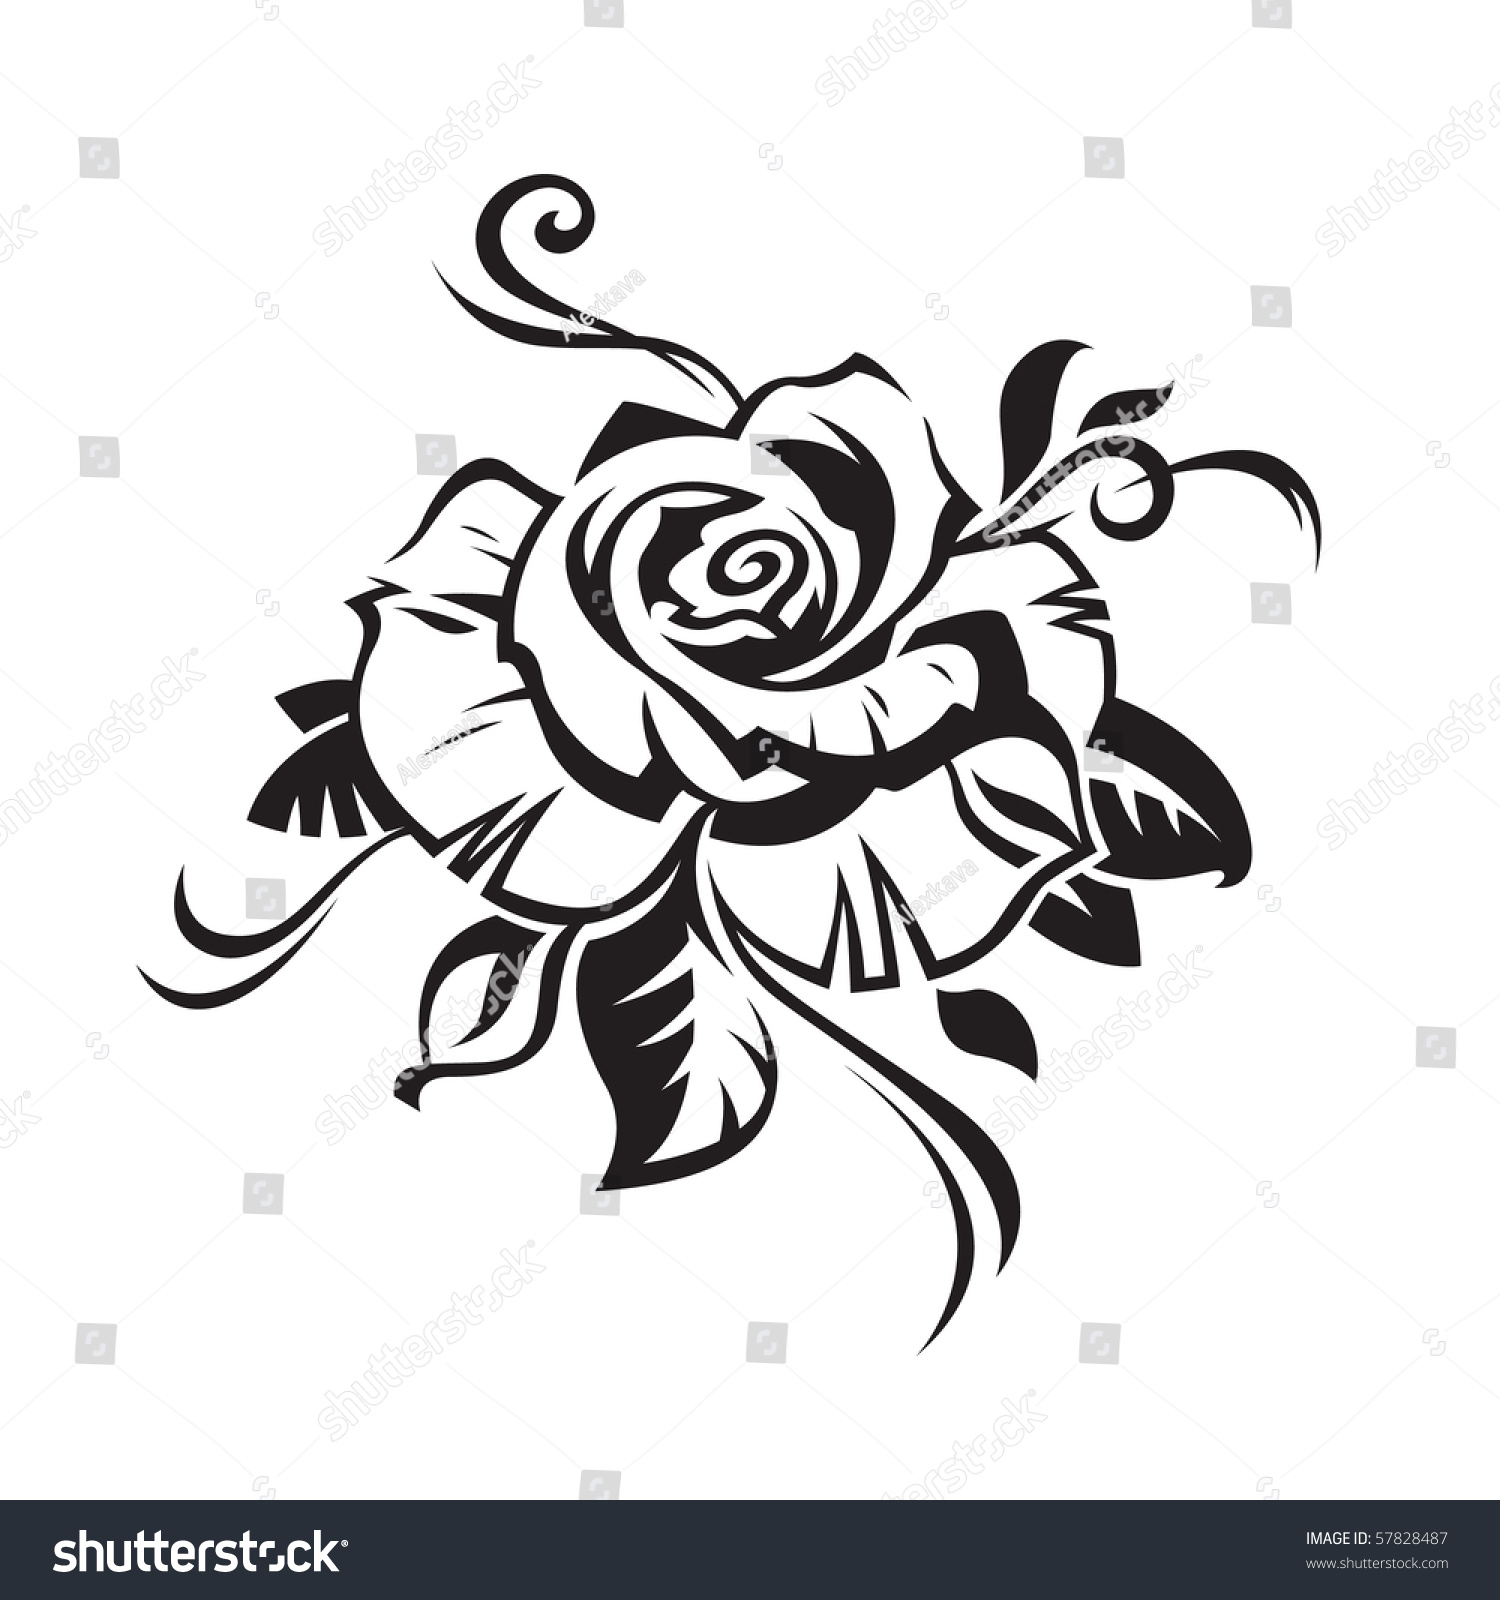 Black And White Rose Artwork